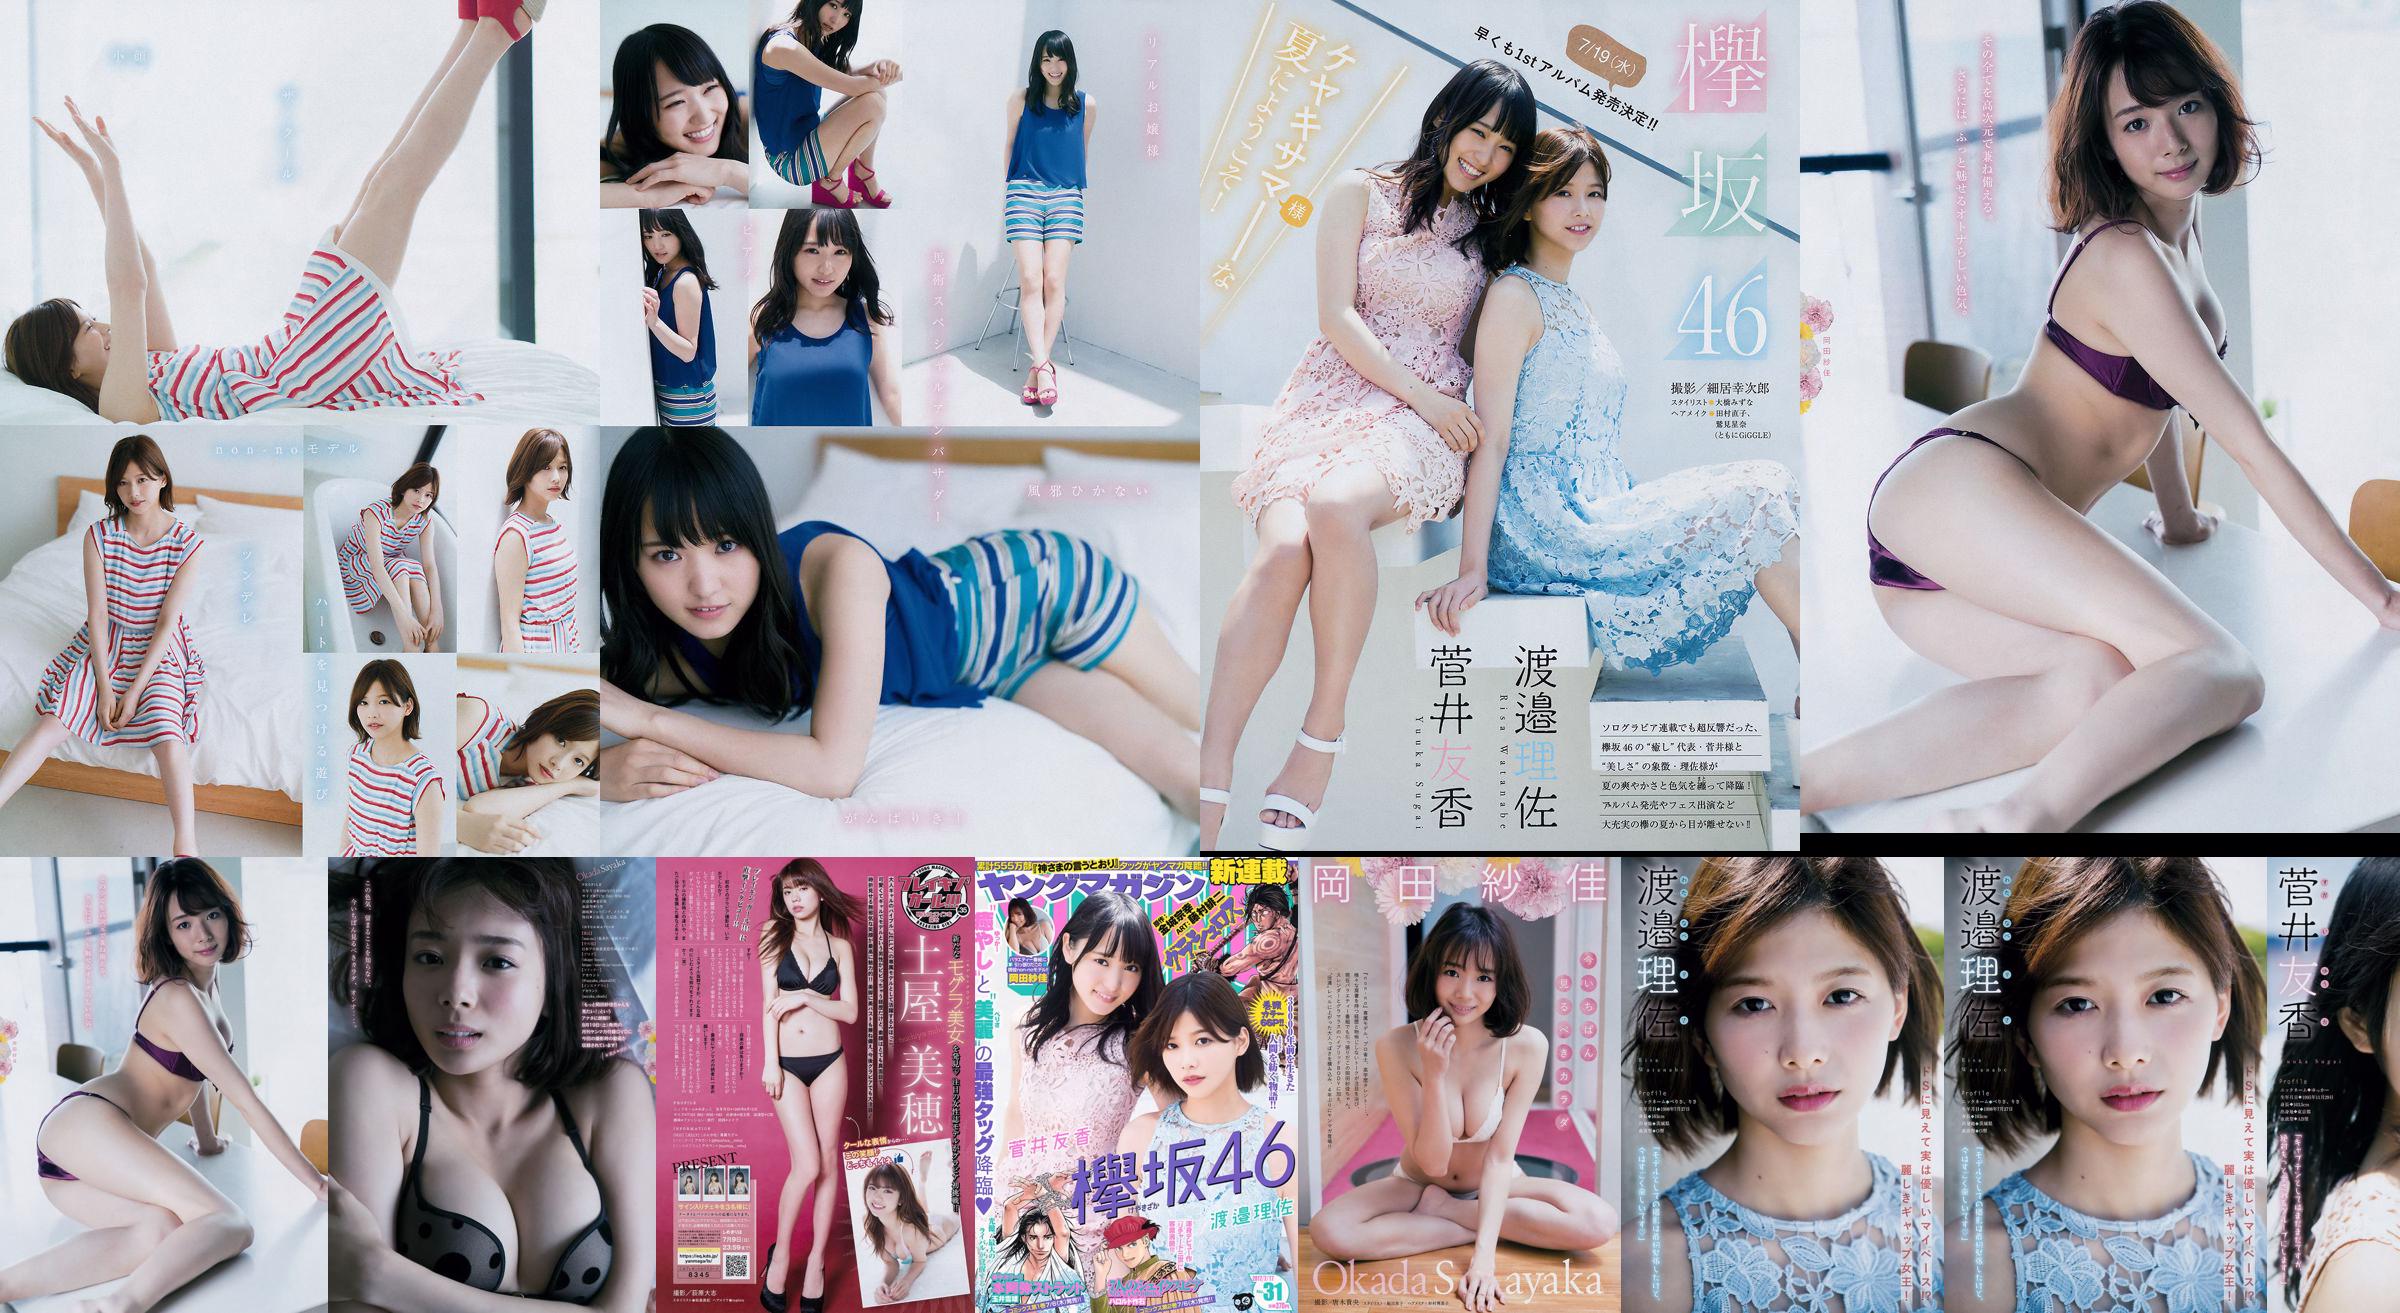 [Young Magazine] Watanabe Risa, Sugai Yuka, Okada Saika 2017 Magazine photo n ° 31 No.4ed992 Page 1